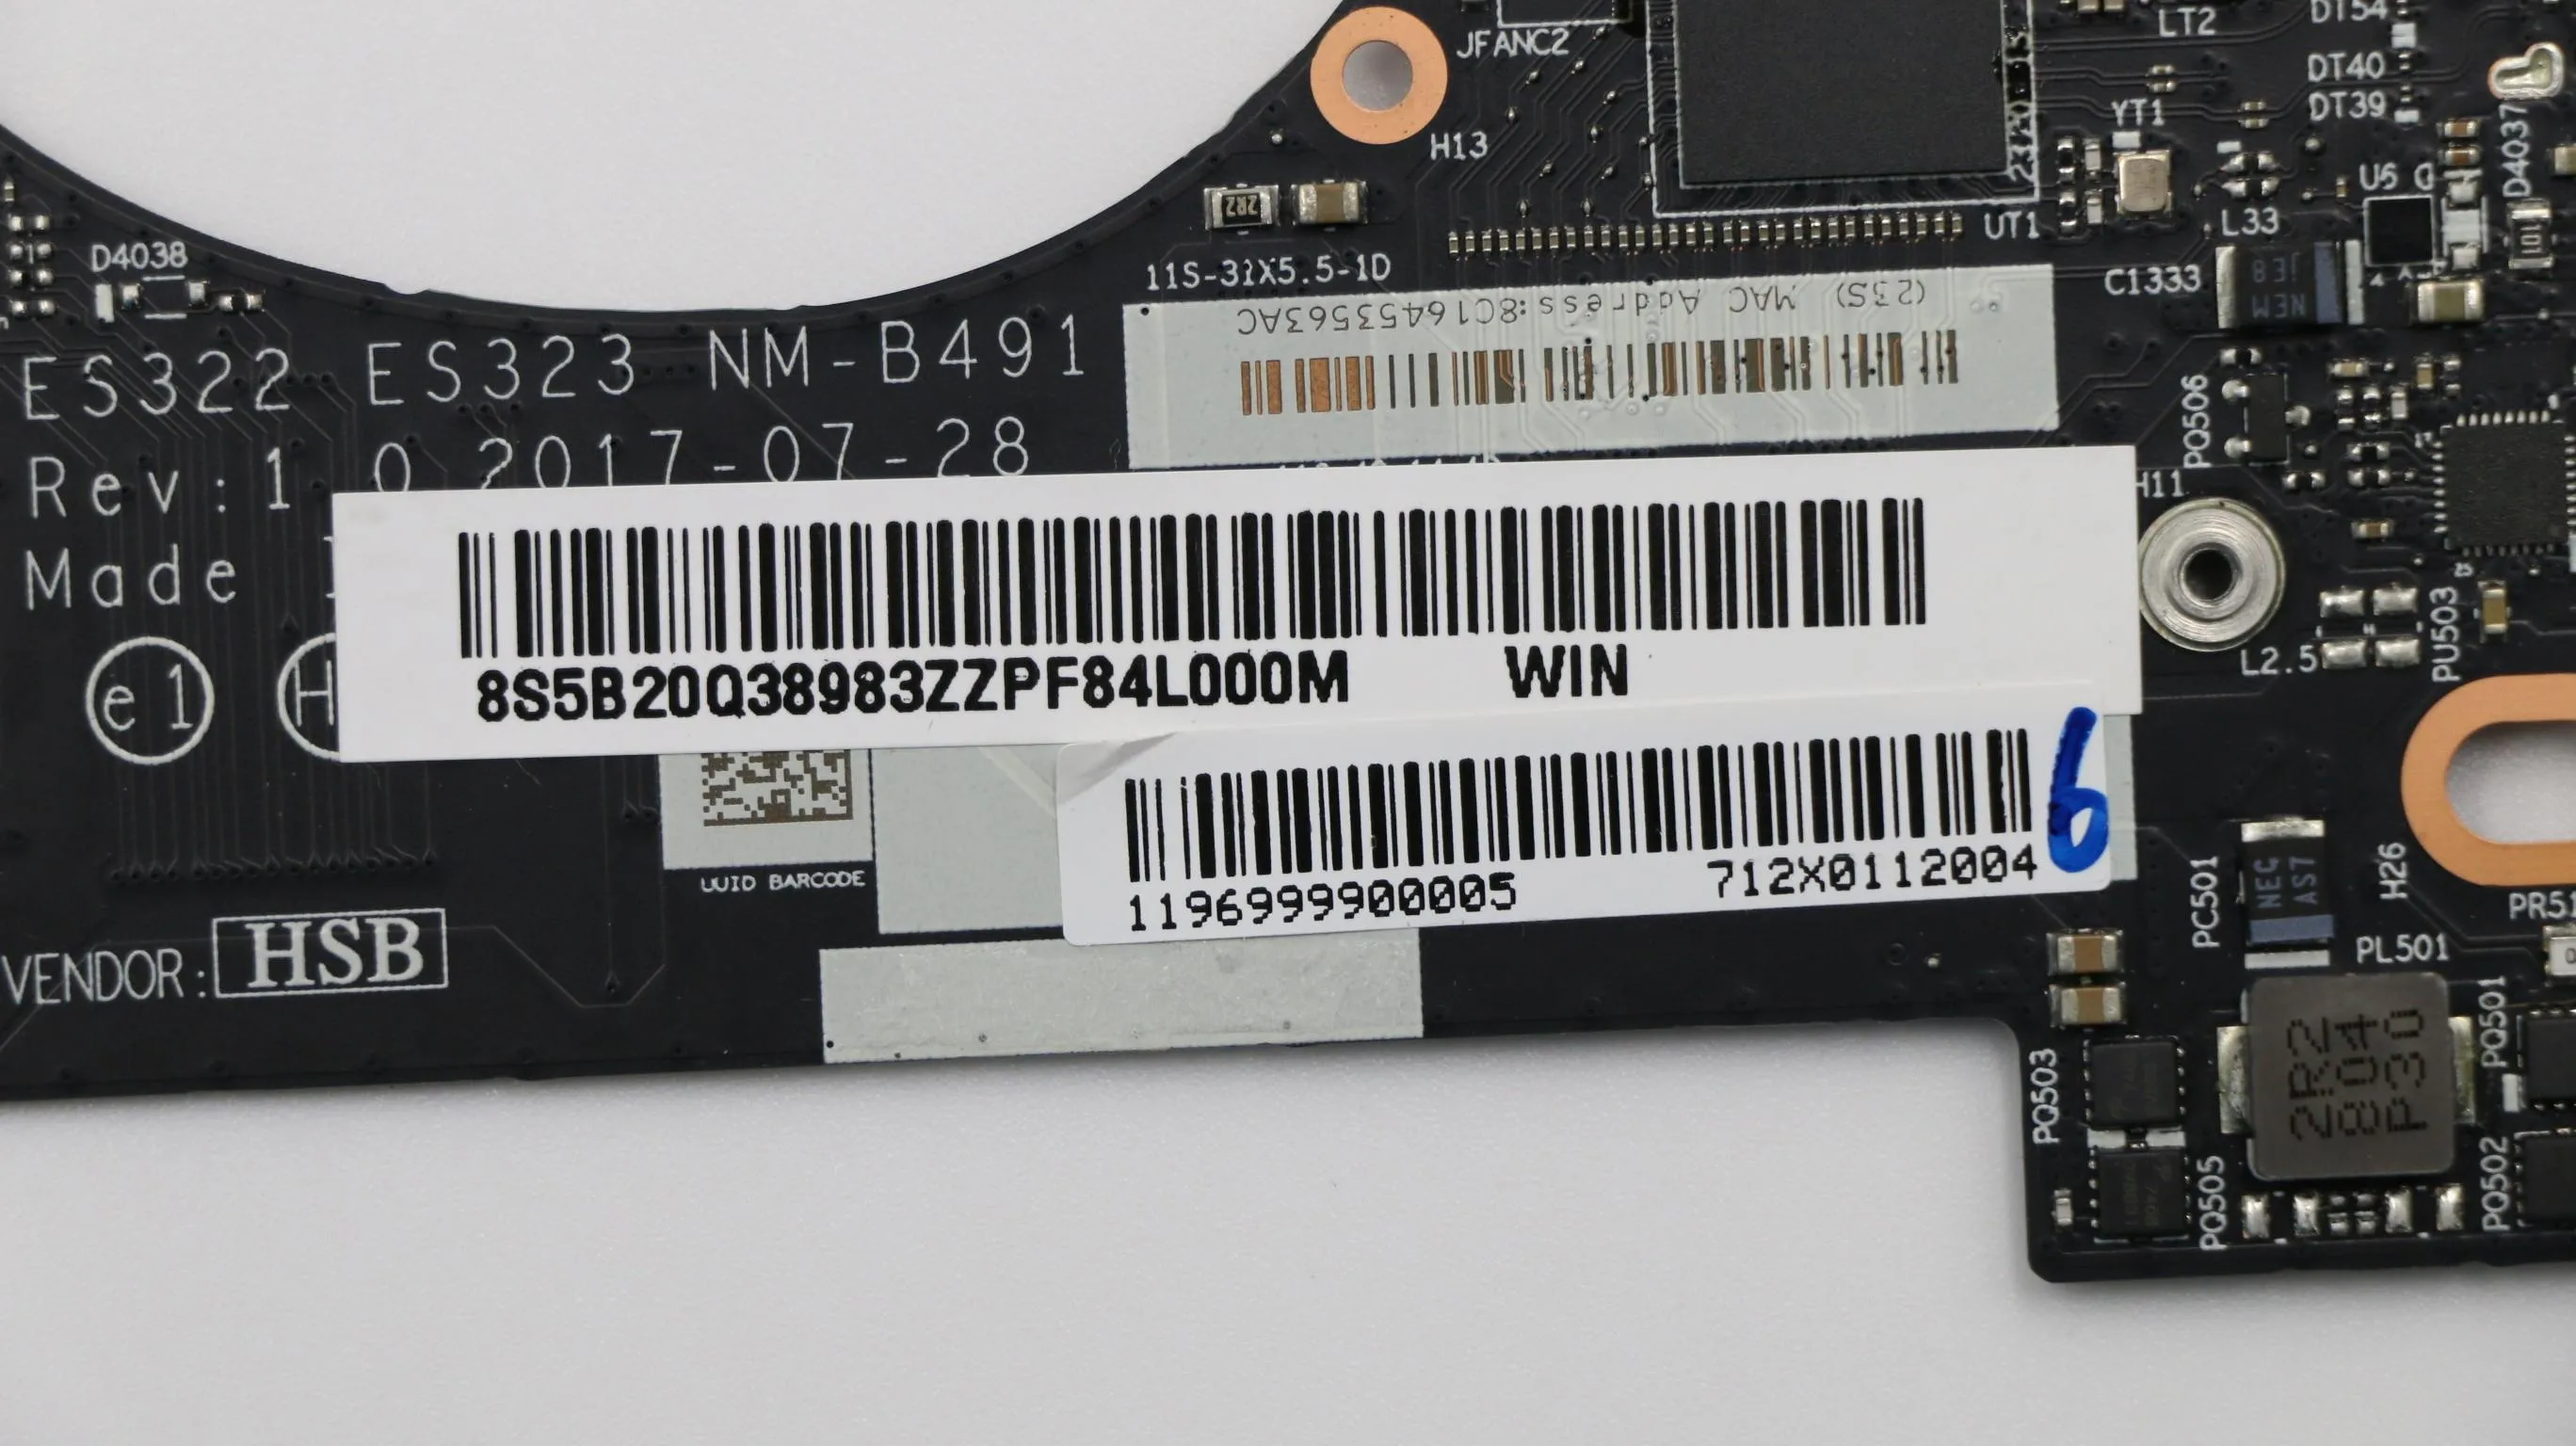 SN NM-B491 FRU PN 5B20Q38983 Процессор intelI58250U Номер модели, совместимый с заменой материнской платы IdeaPad для ноутбука ES322 ES323 720S-13IKB - 5